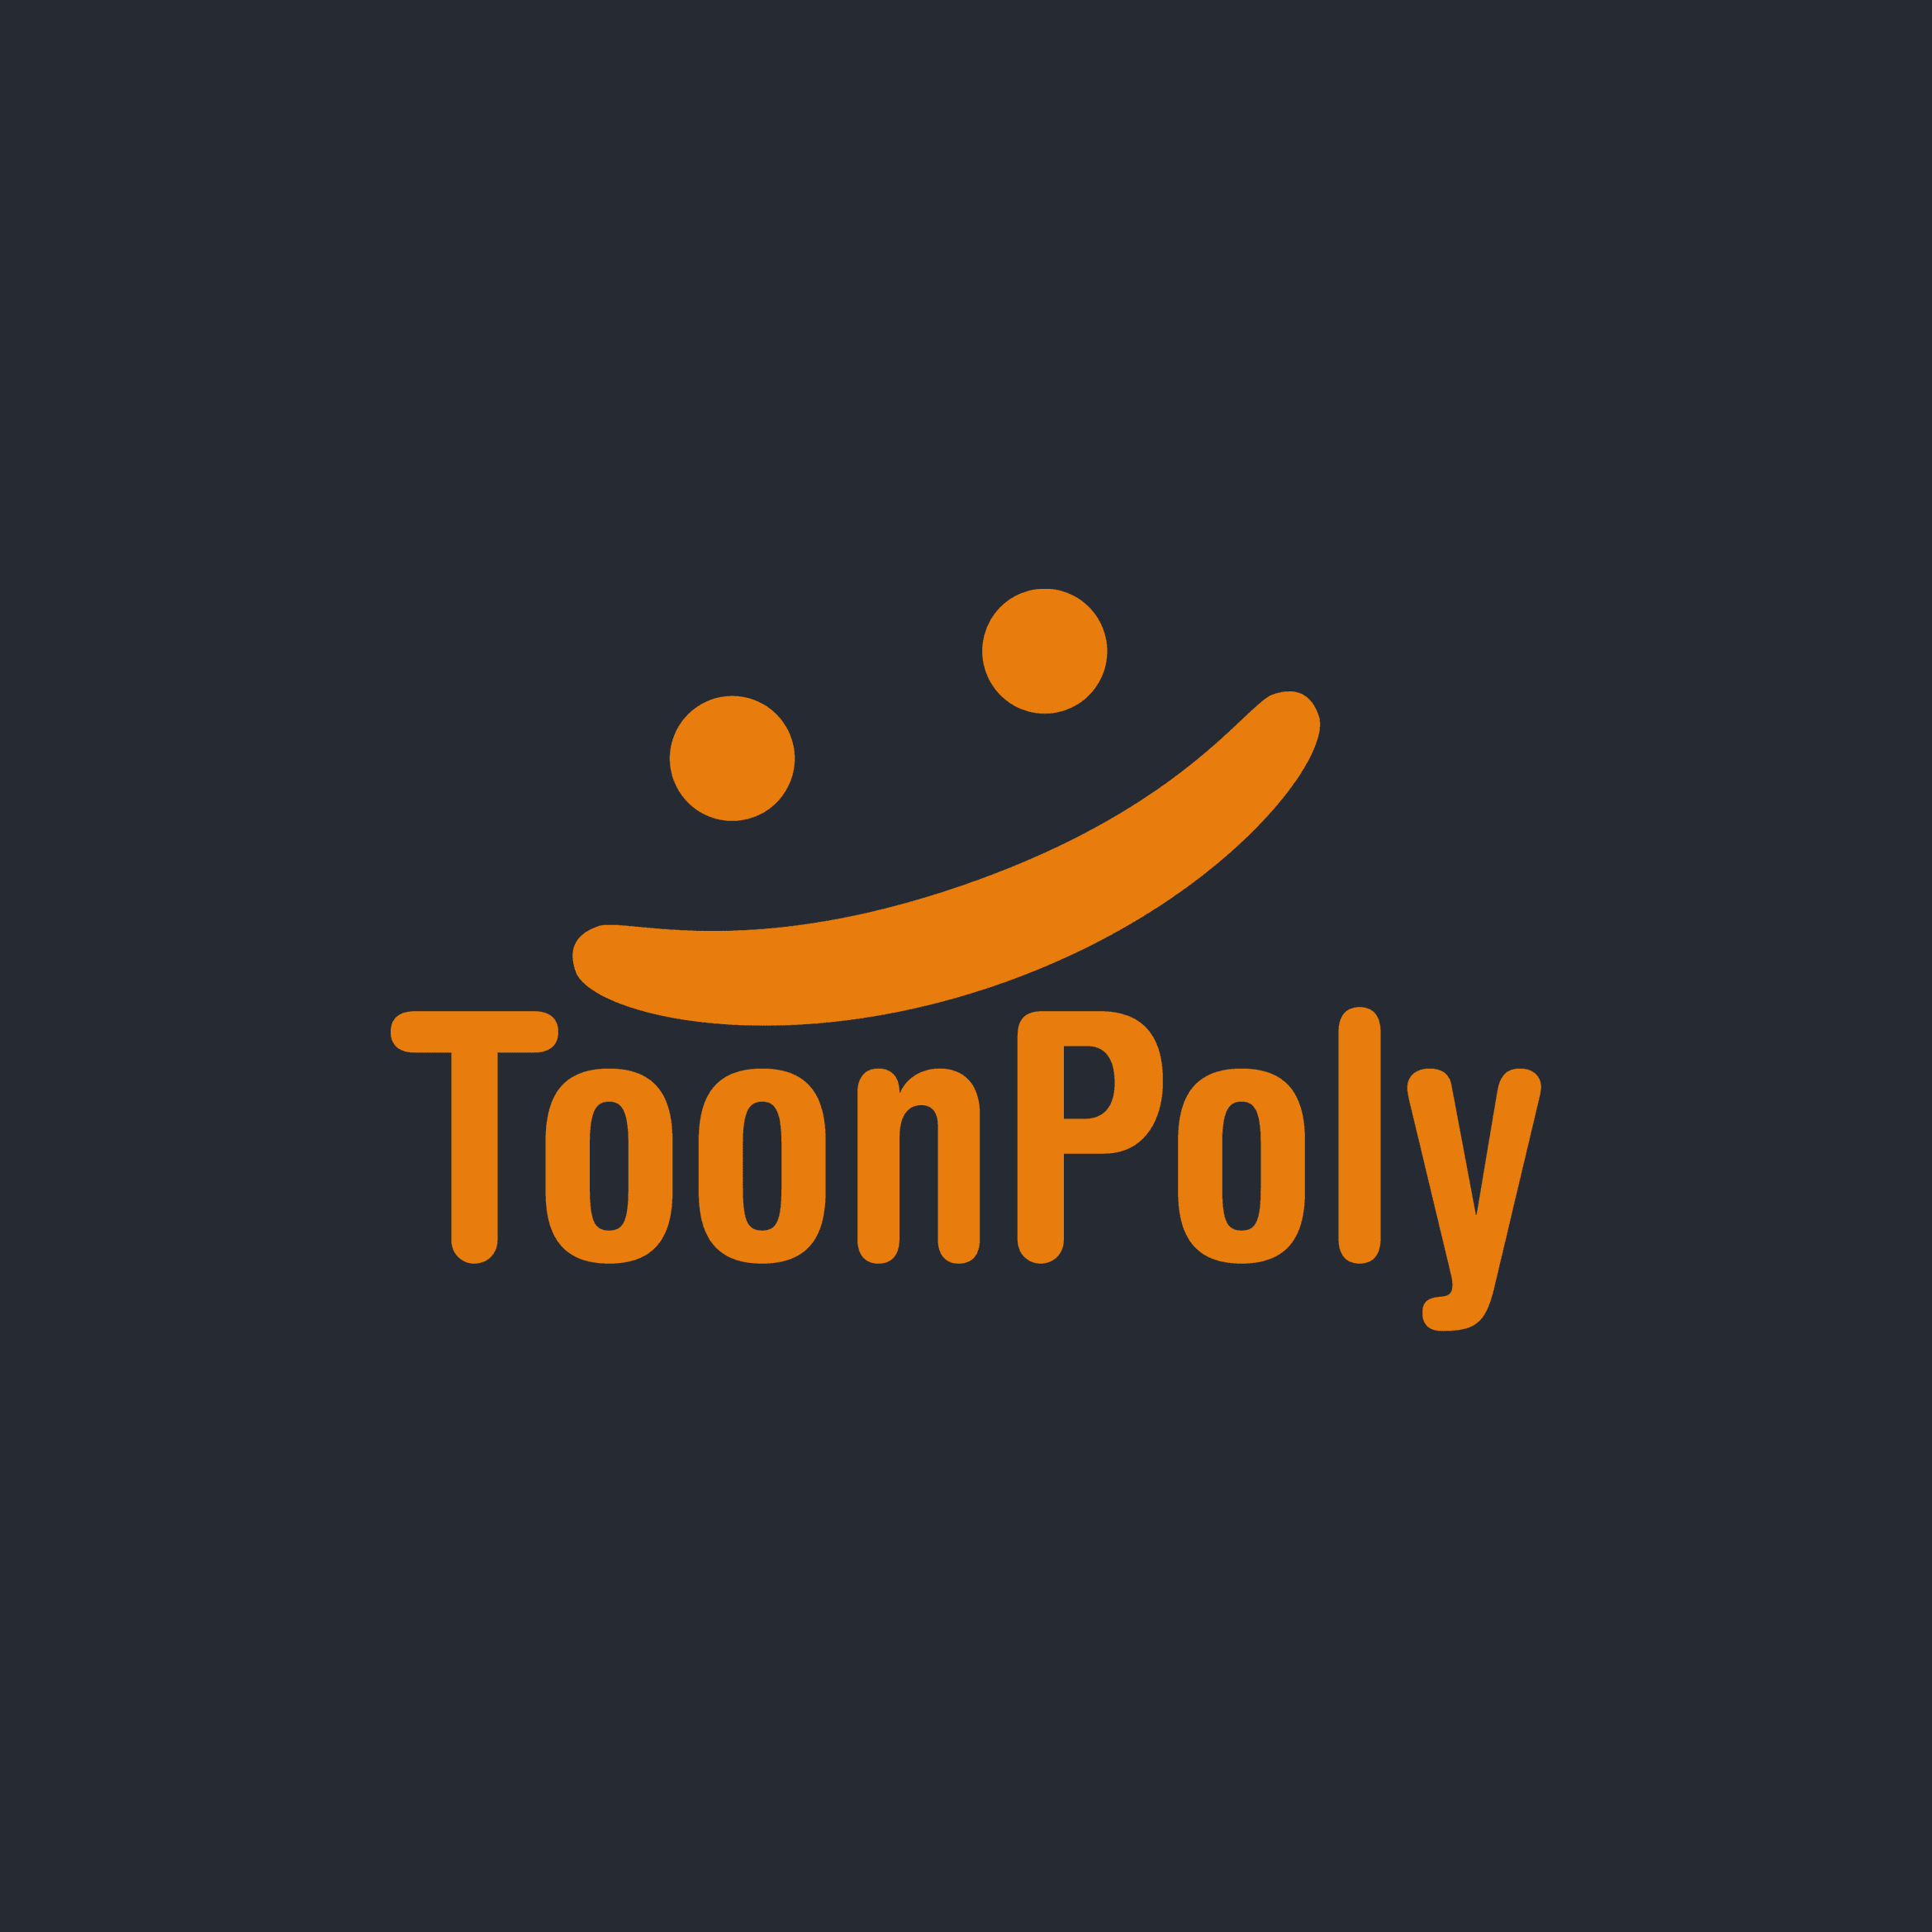 ToonPoly